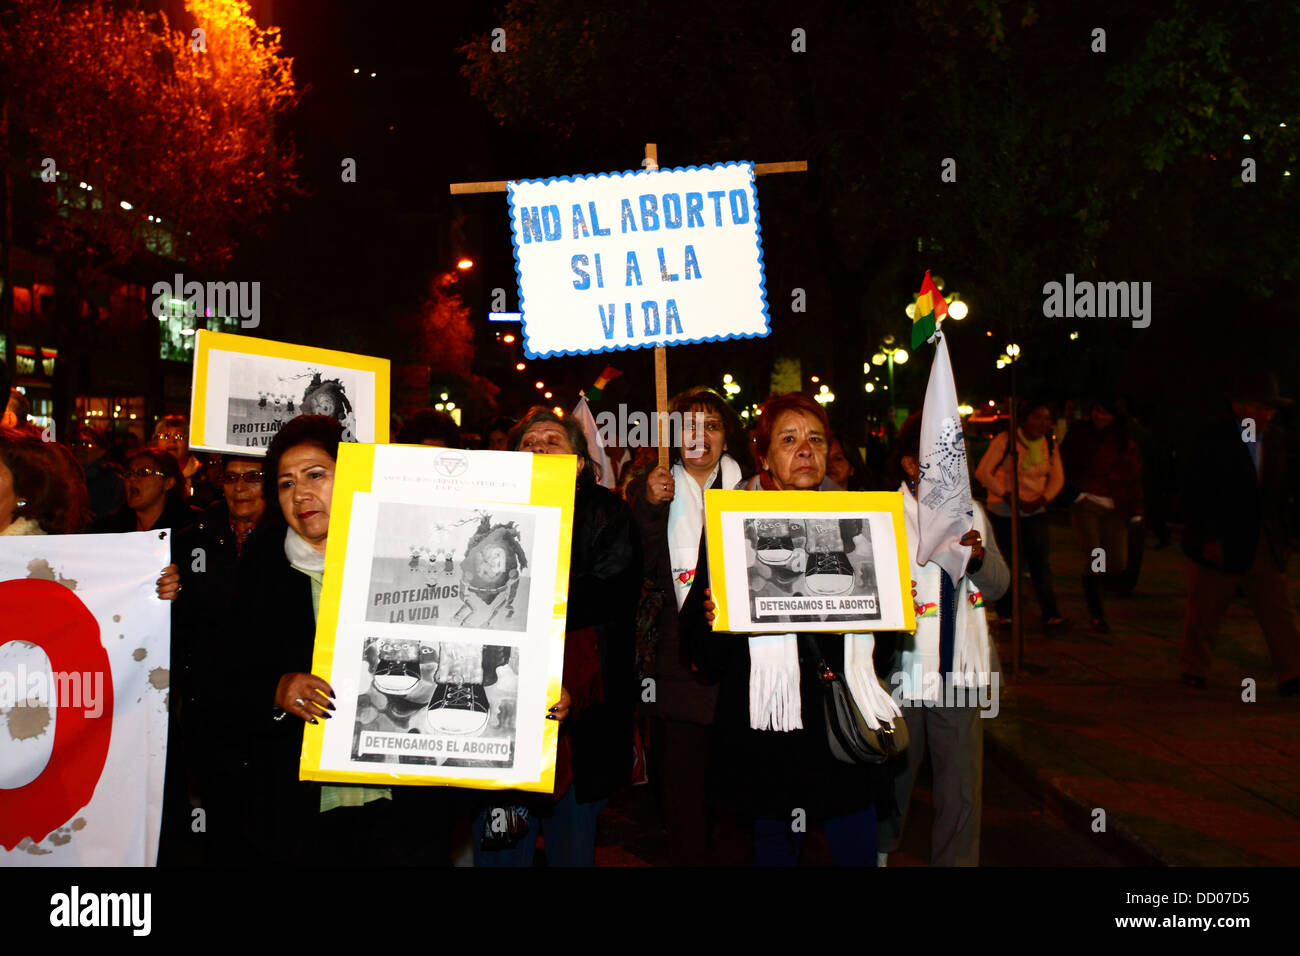 LA PAZ, BOLIVIA, 22nd de agosto de 2013. La gente participa en una marcha organizada por la Red Pro-Vida (Pro Life Network) para protestar contra la despenalización del aborto. Bolivia ha estado debatiendo si despenalizar el aborto desde marzo de 2012. Crédito James Brunker / Alamy Live News Foto de stock